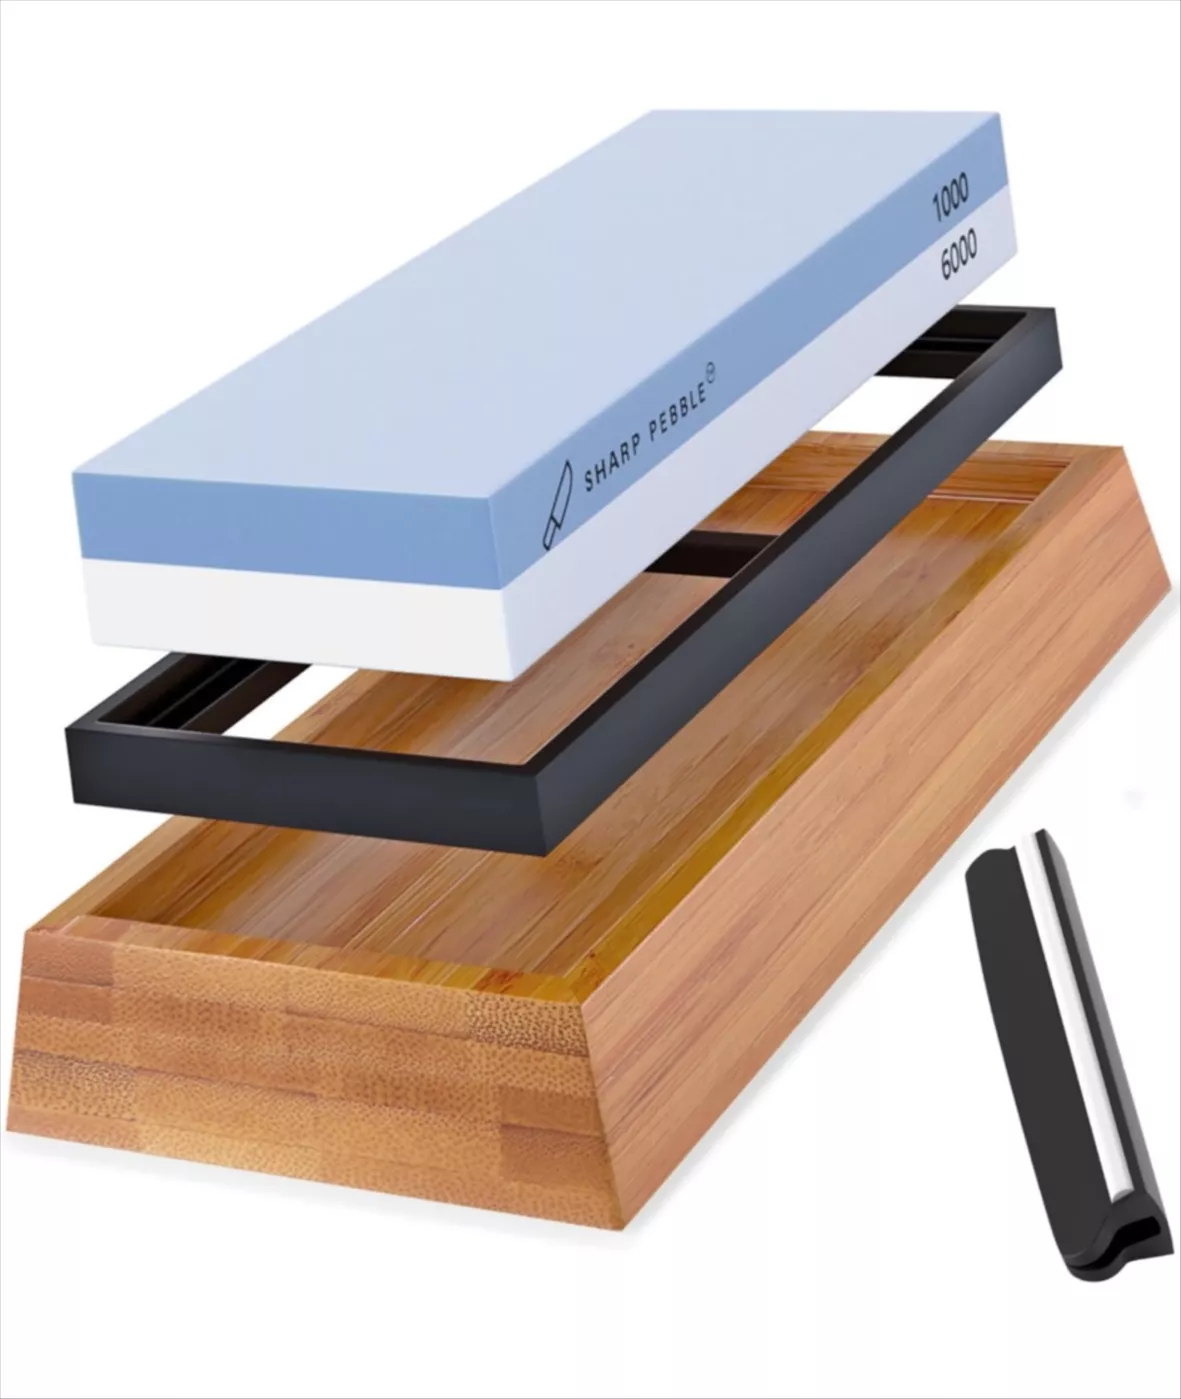 Sharp Pebble Premium Whetstone Knife Sharpening Stone 2 Side Grit 1000/6000  Sharpener NonSlip Bamboo Base & Angle Guide